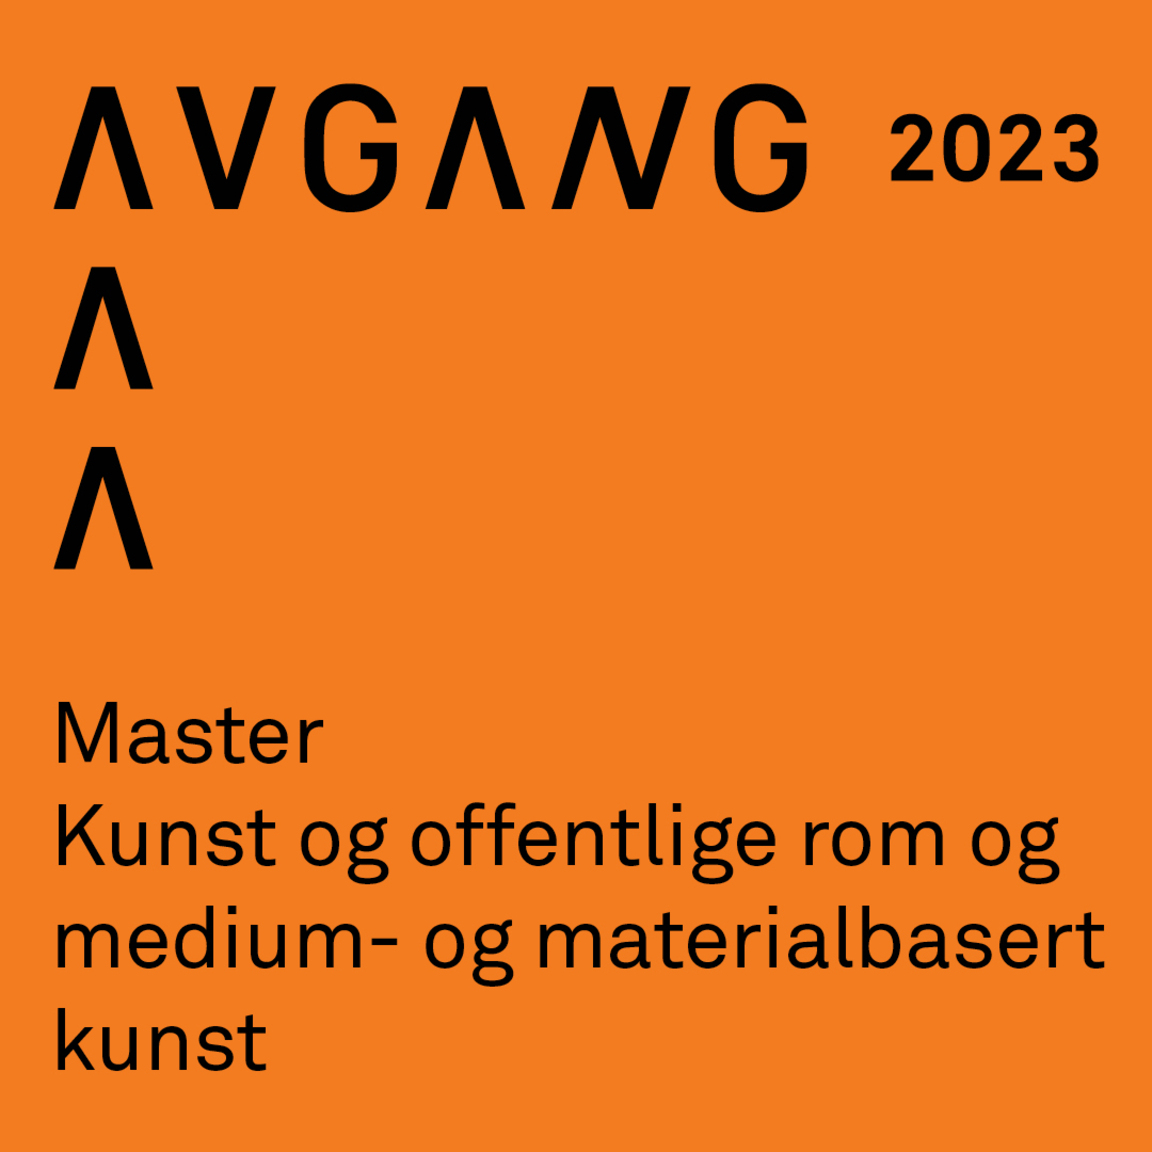 Avgang 2023: Master medium- og materialbasert kunst /Master kunst og offentlige rom